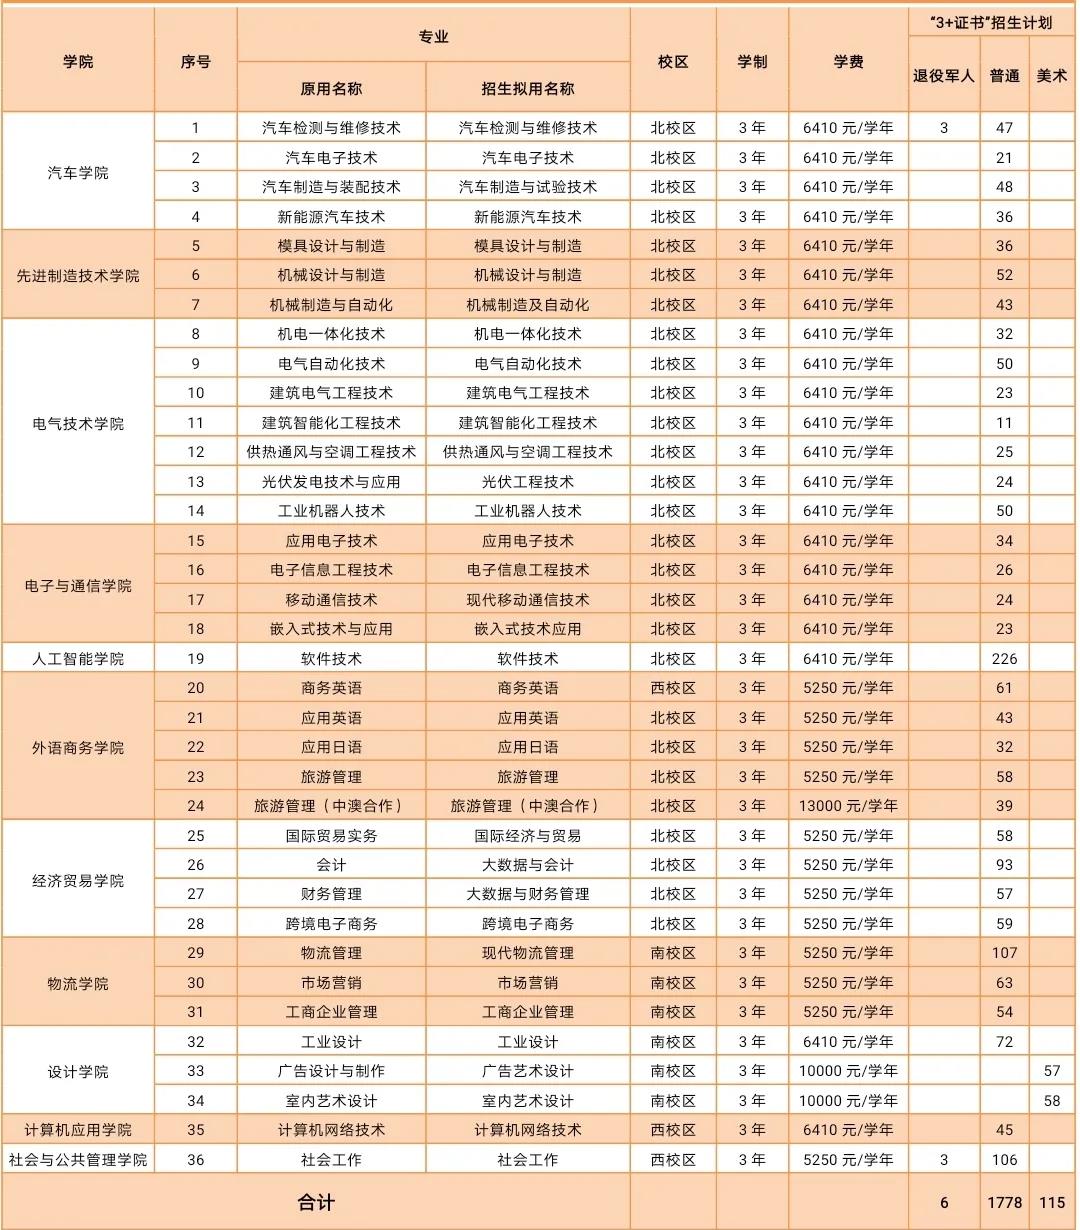 广东机电职业技术学院3+证书招生专业